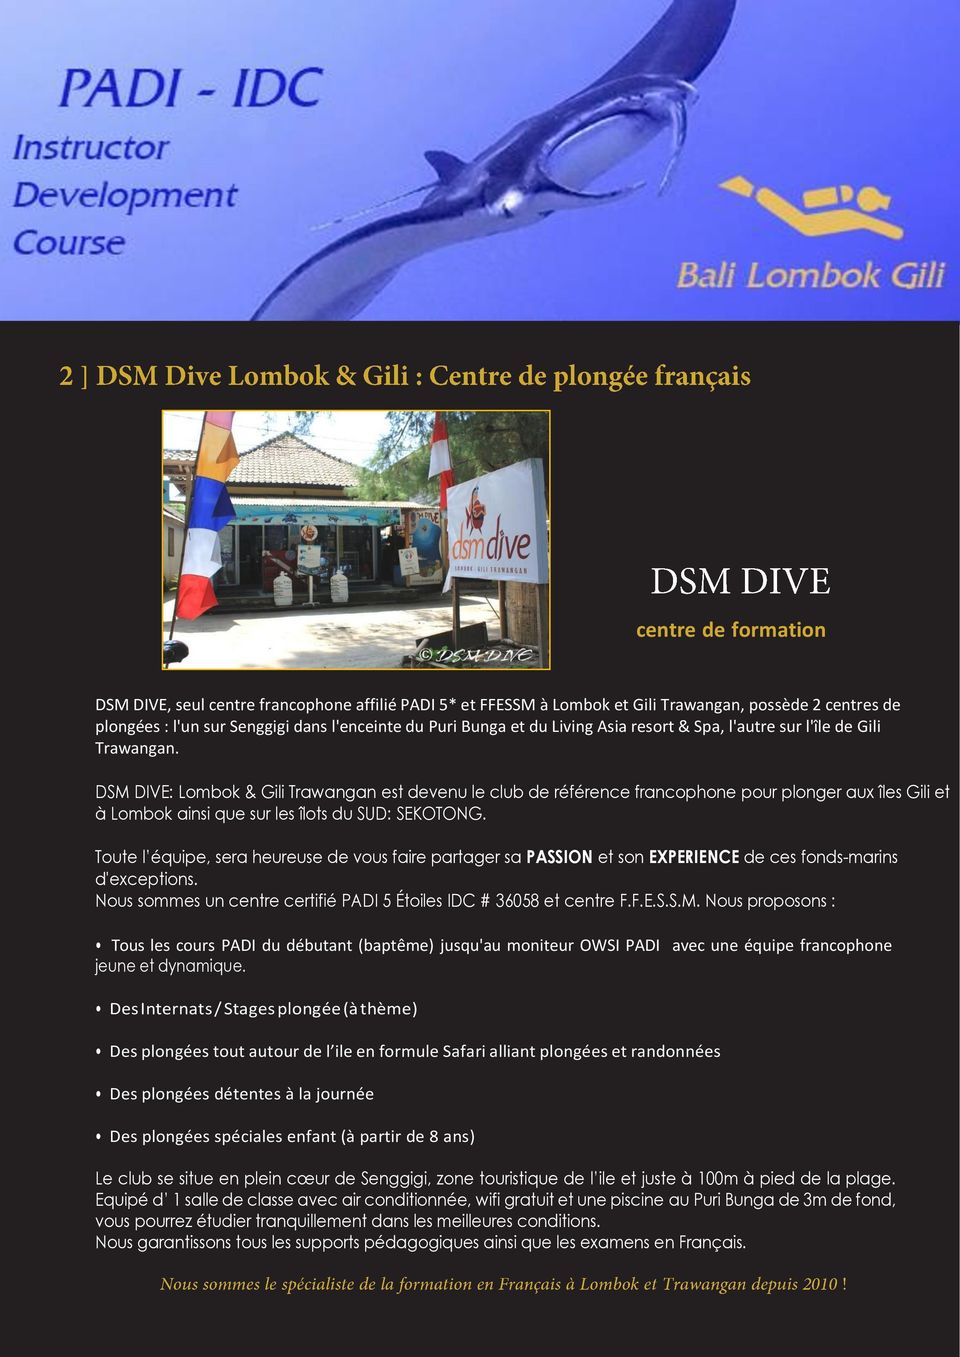 DSM DIVE: Lombok & Gili Trawangan est devenu le club de référence francophone pour plonger aux îles Gili et à Lombok ainsi que sur les îlots du SUD: SEKOTONG.